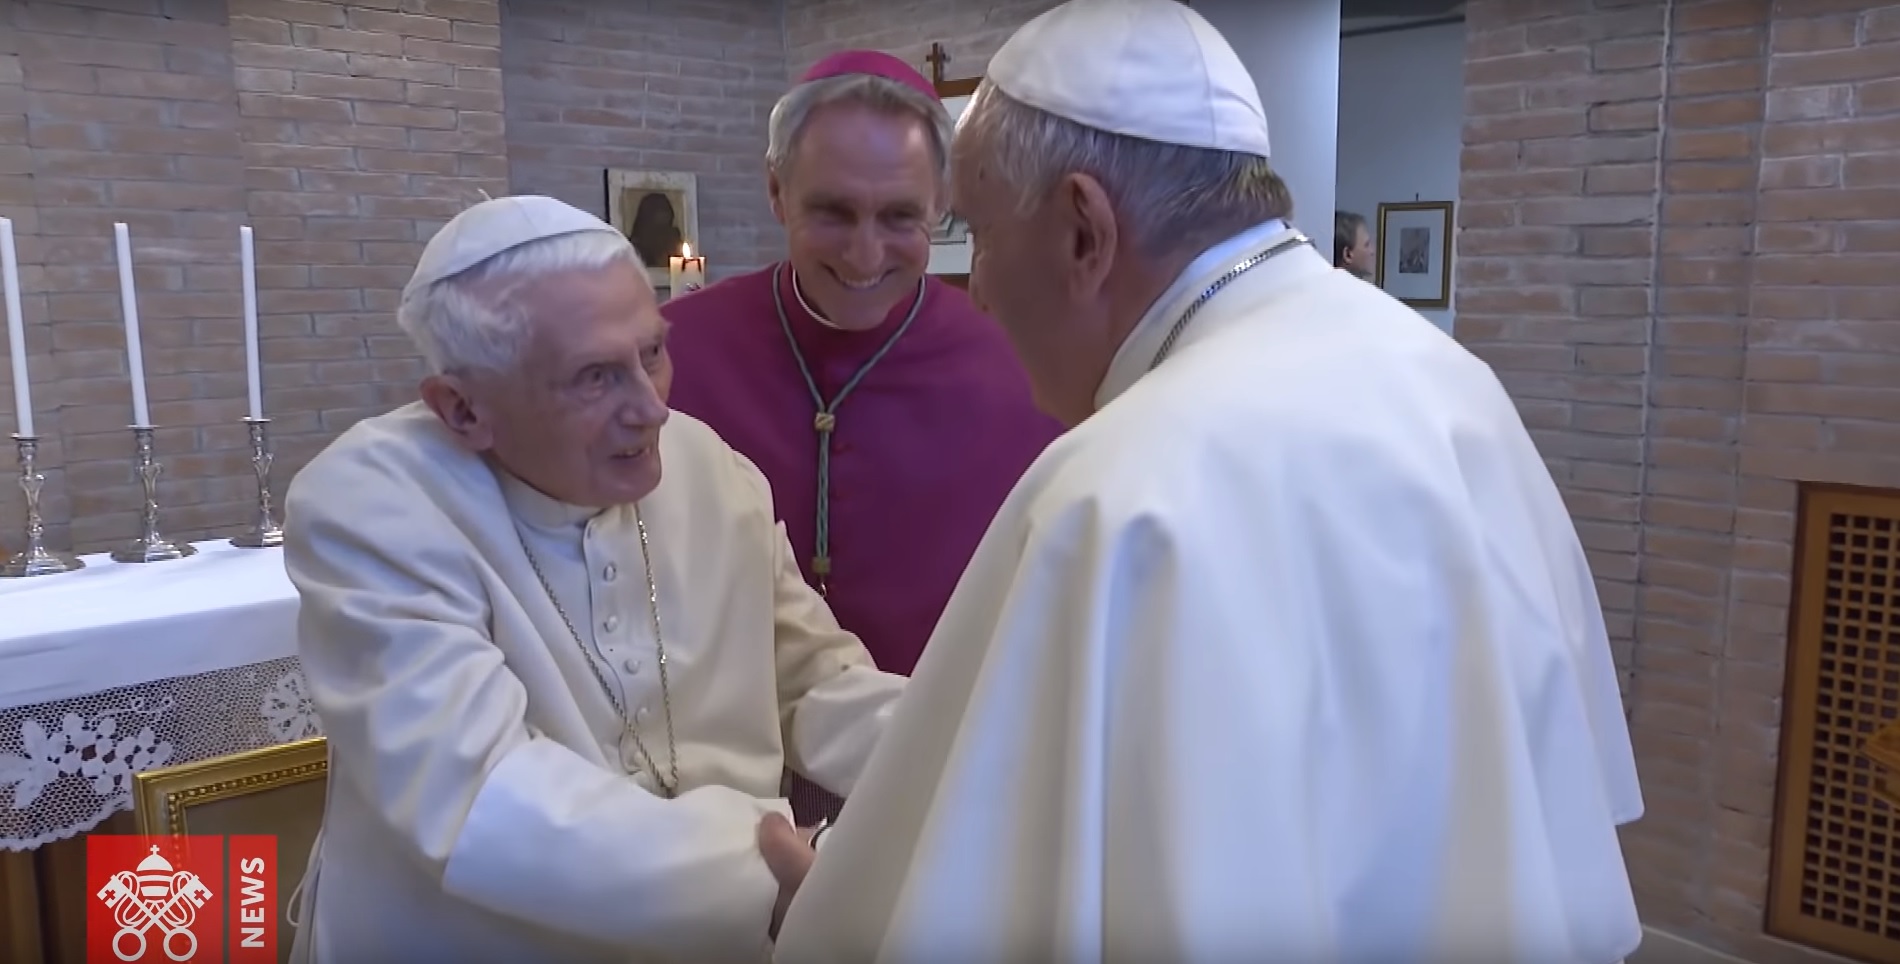 Benedykt XVI i papież Franciszek